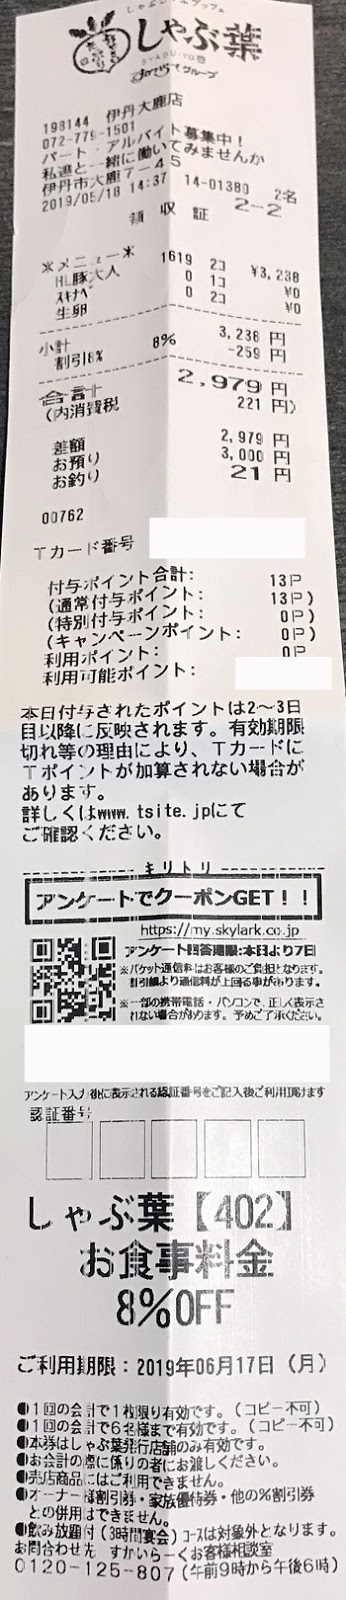 しゃぶ葉 伊丹大鹿店 2019/5/18 のレシート